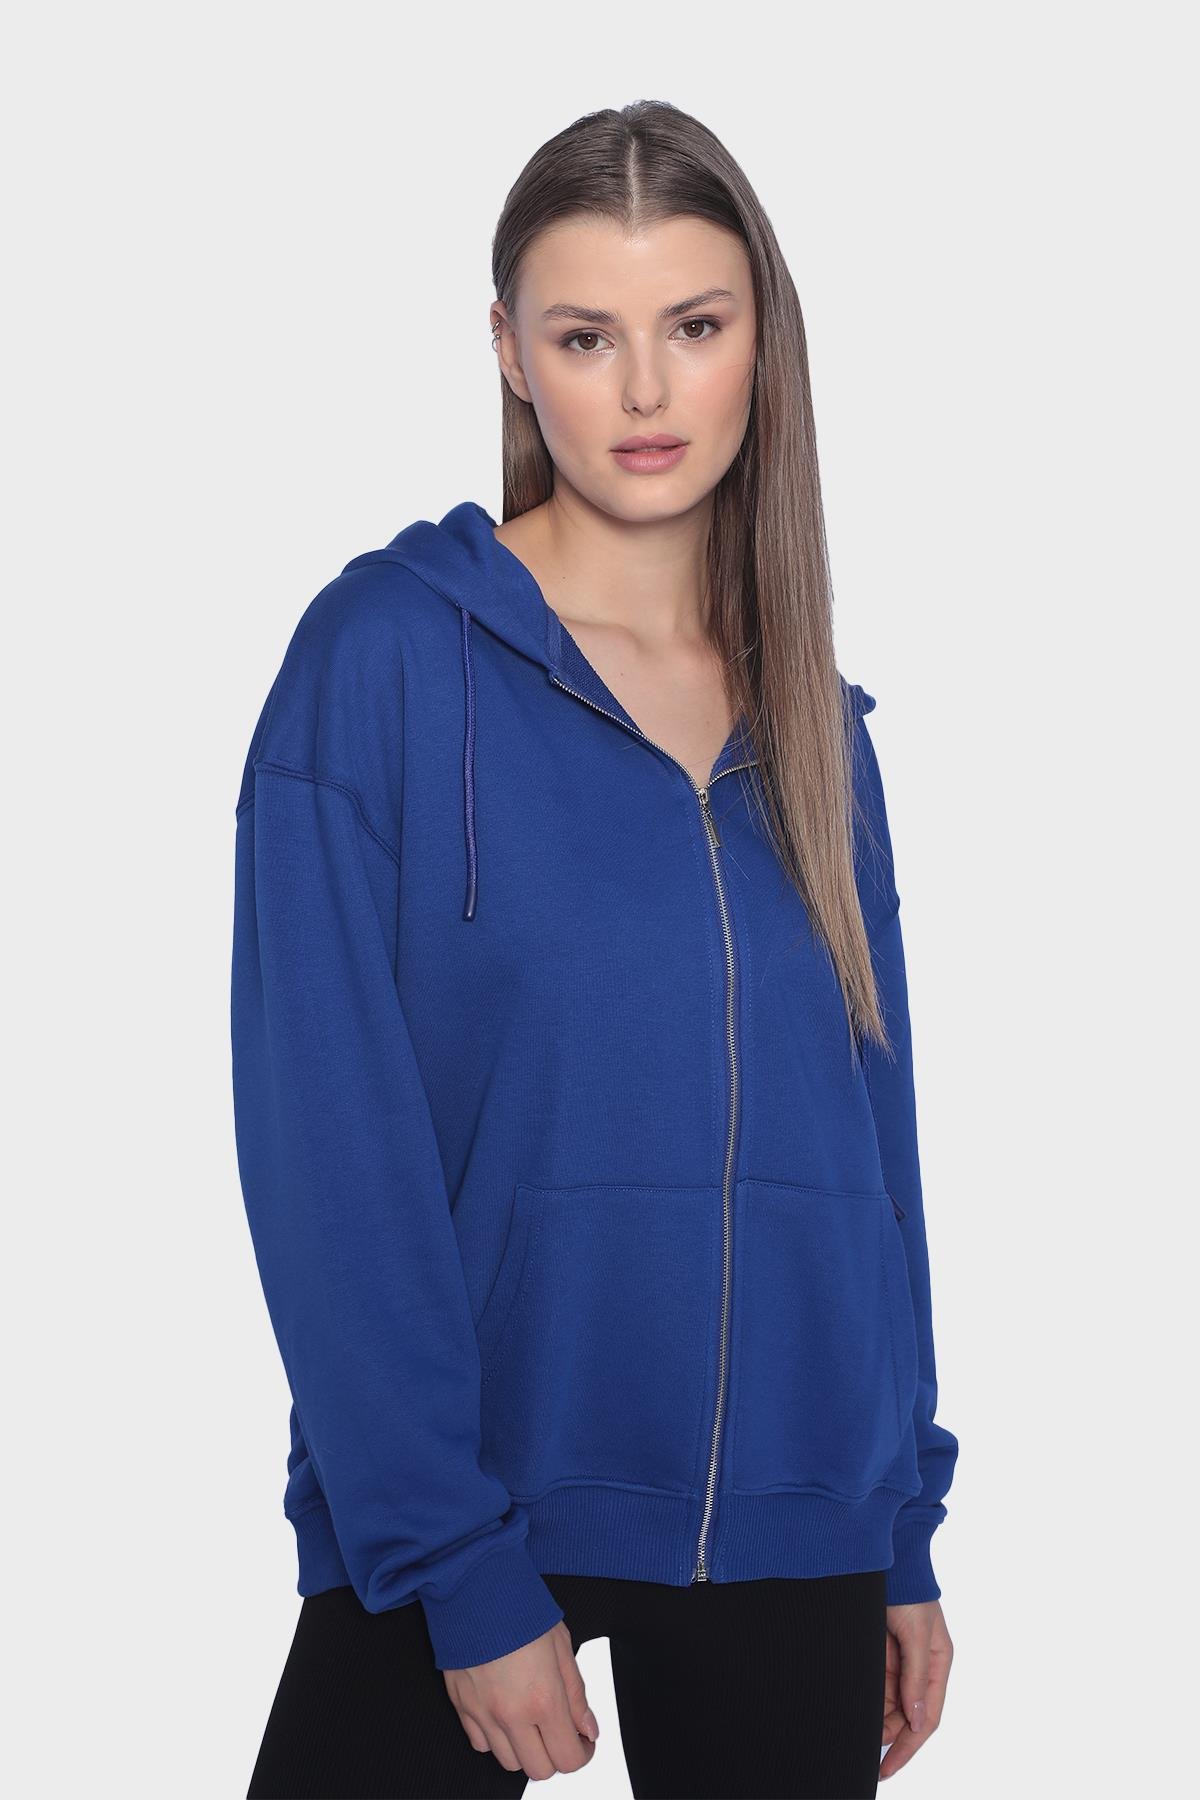 Kadın kapüşonlu, uzun kollu ve fermuarlı sweatshirt - Saks Mavi